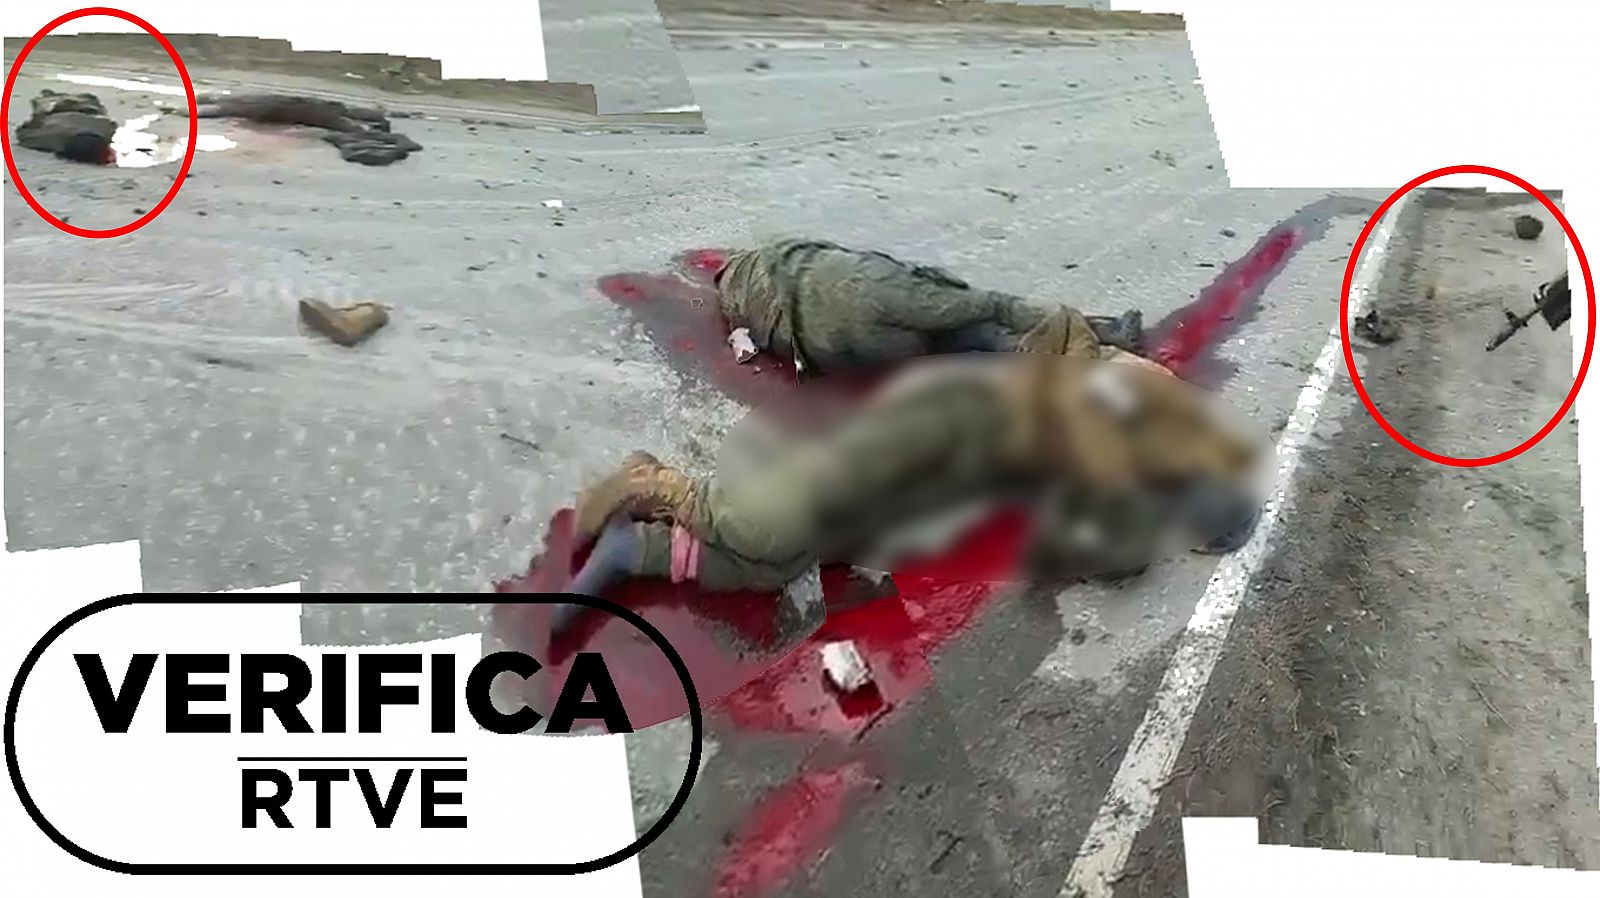 Composición que muestra los detalles principales del vídeo: los cuerpos tendidos y el arma que dispara con sello Verifica